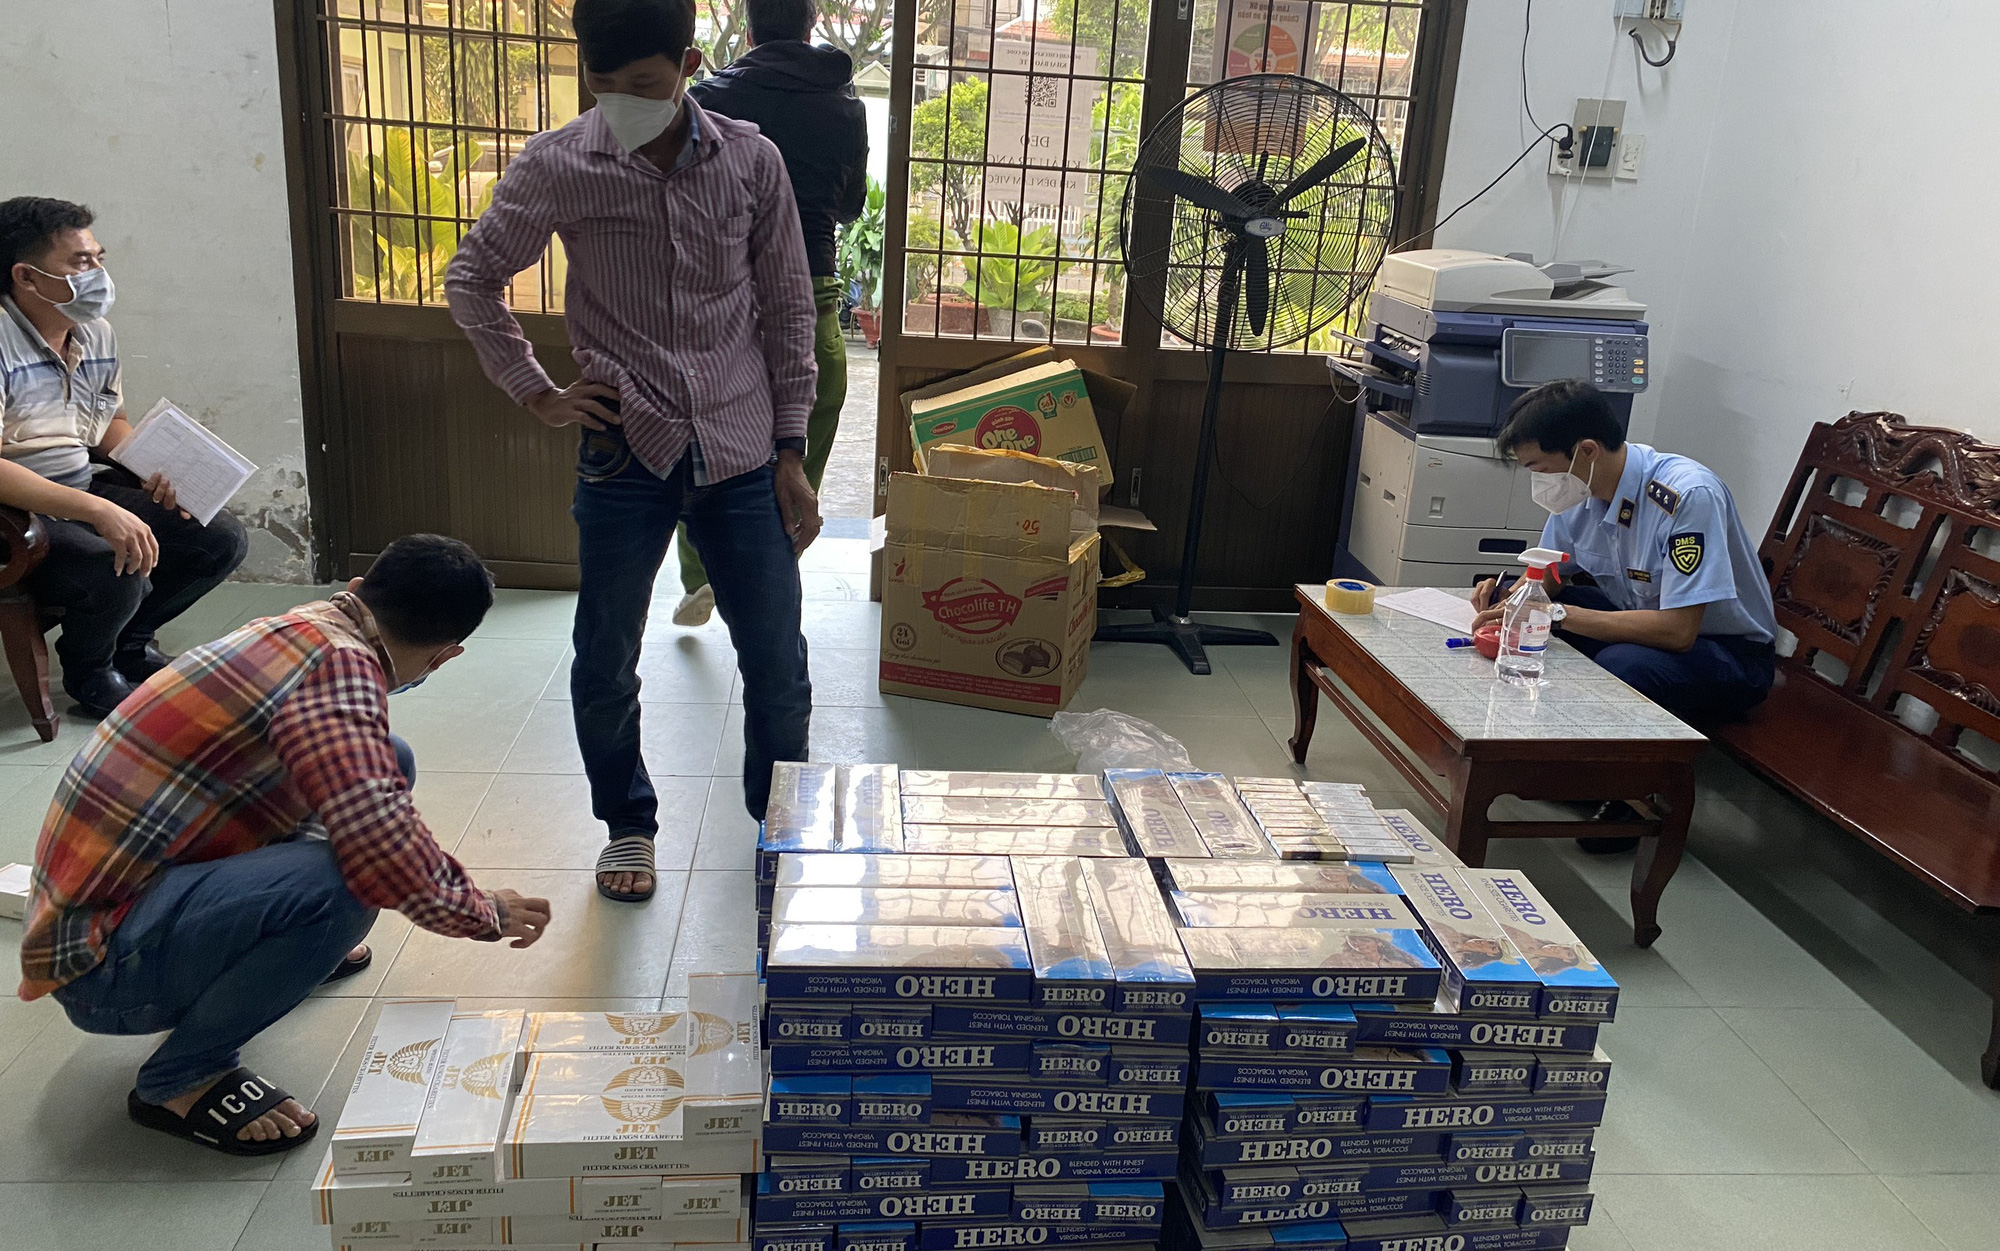 Biết hàng cấm, tài xế xe khách ở Kiên Giang vẫn 'cắn răng' vận chuyển để lấy 250.000 đồng tiền công